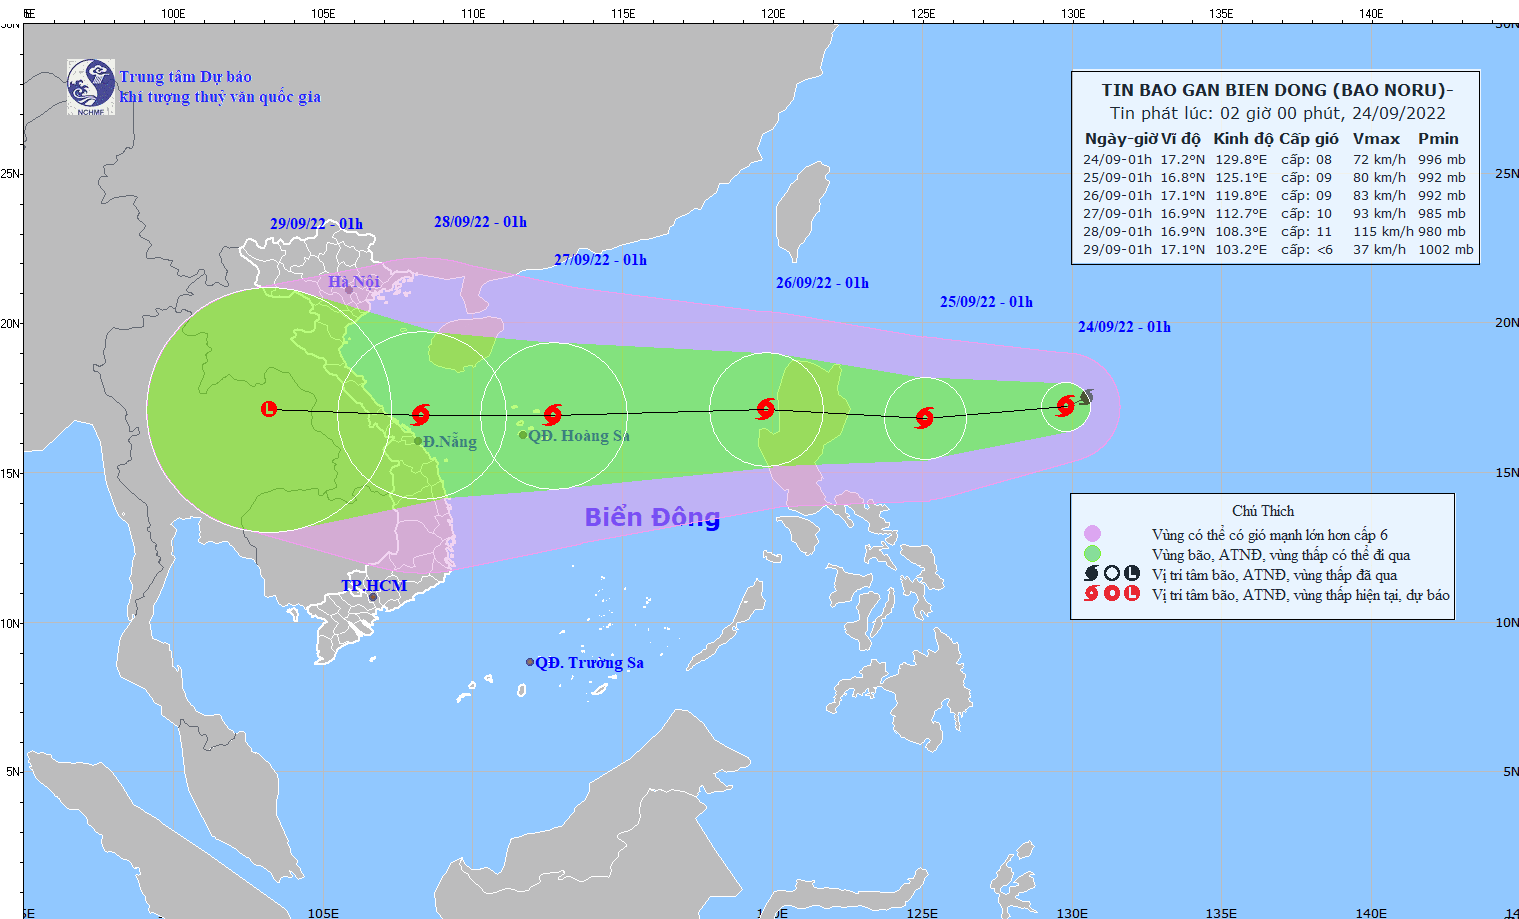 Bão Noru tới Biển Đông, Việt Nam có thể đón nhận cơn bão số 4 - Ảnh 1.